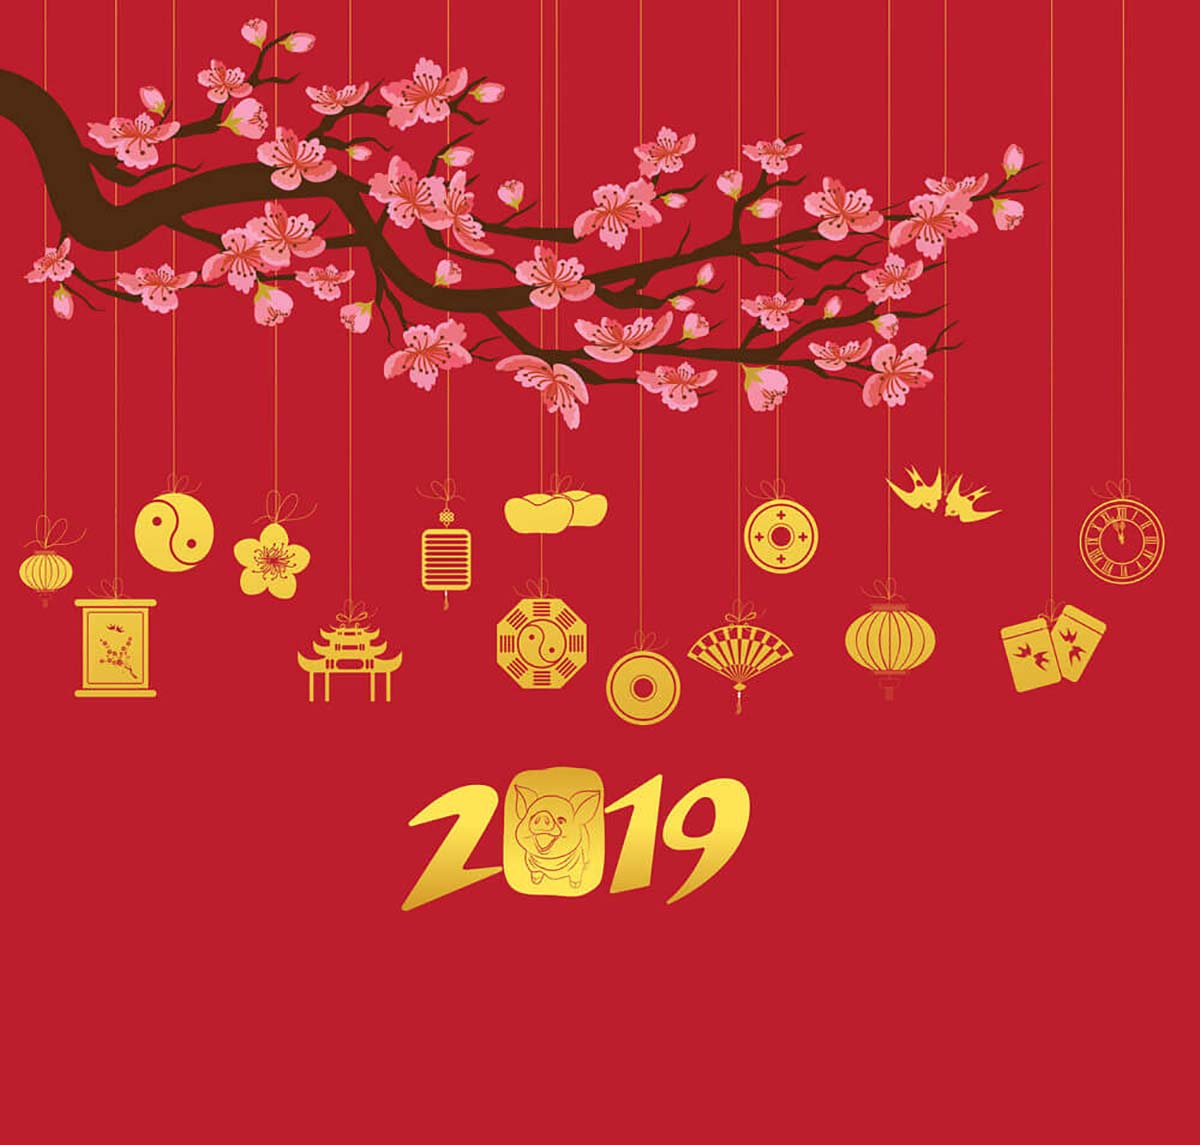 Ảnh nền chúc mừng năm mới 2019 đẹp và đơn giản